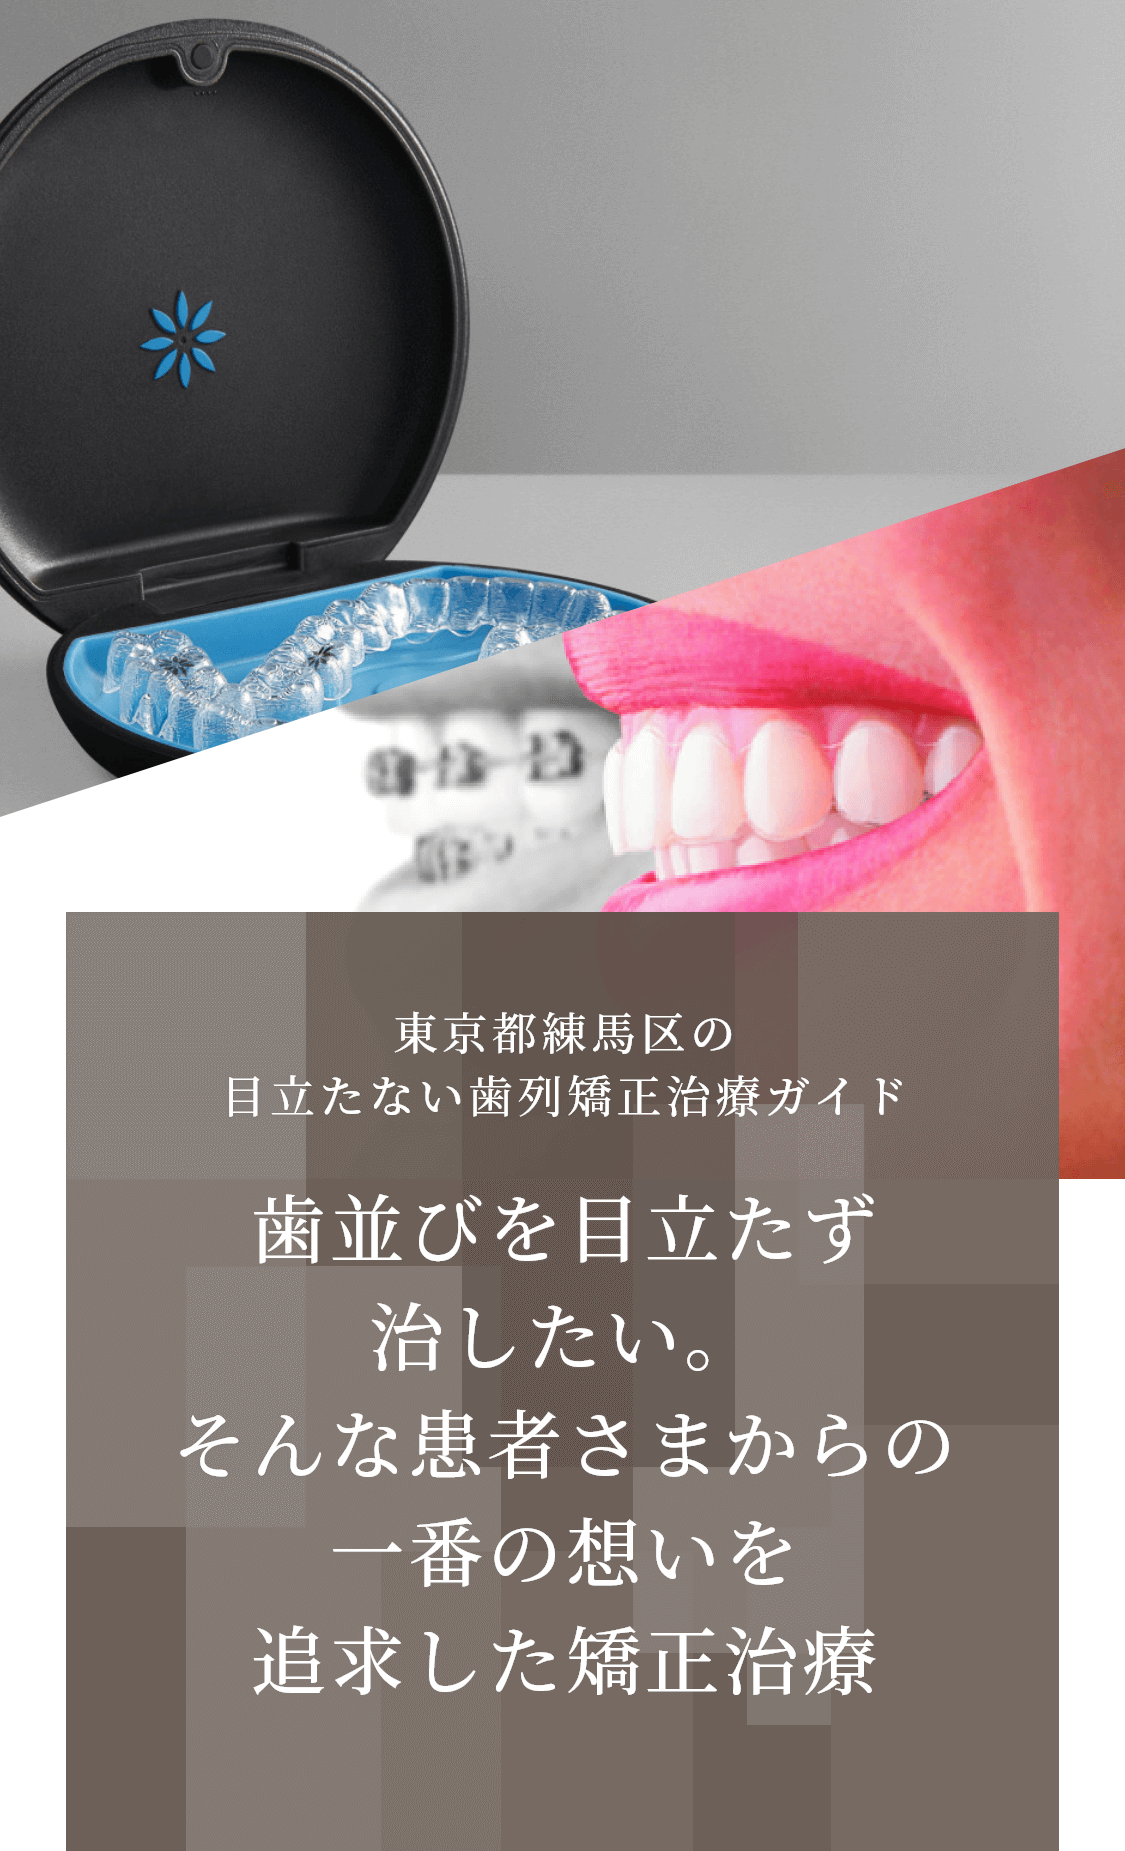 東京都練馬区の目立たない歯列矯正治療ガイド 歯並びを目立たず治したい。そんな患者さまからの一番の想いを追求した矯正治療